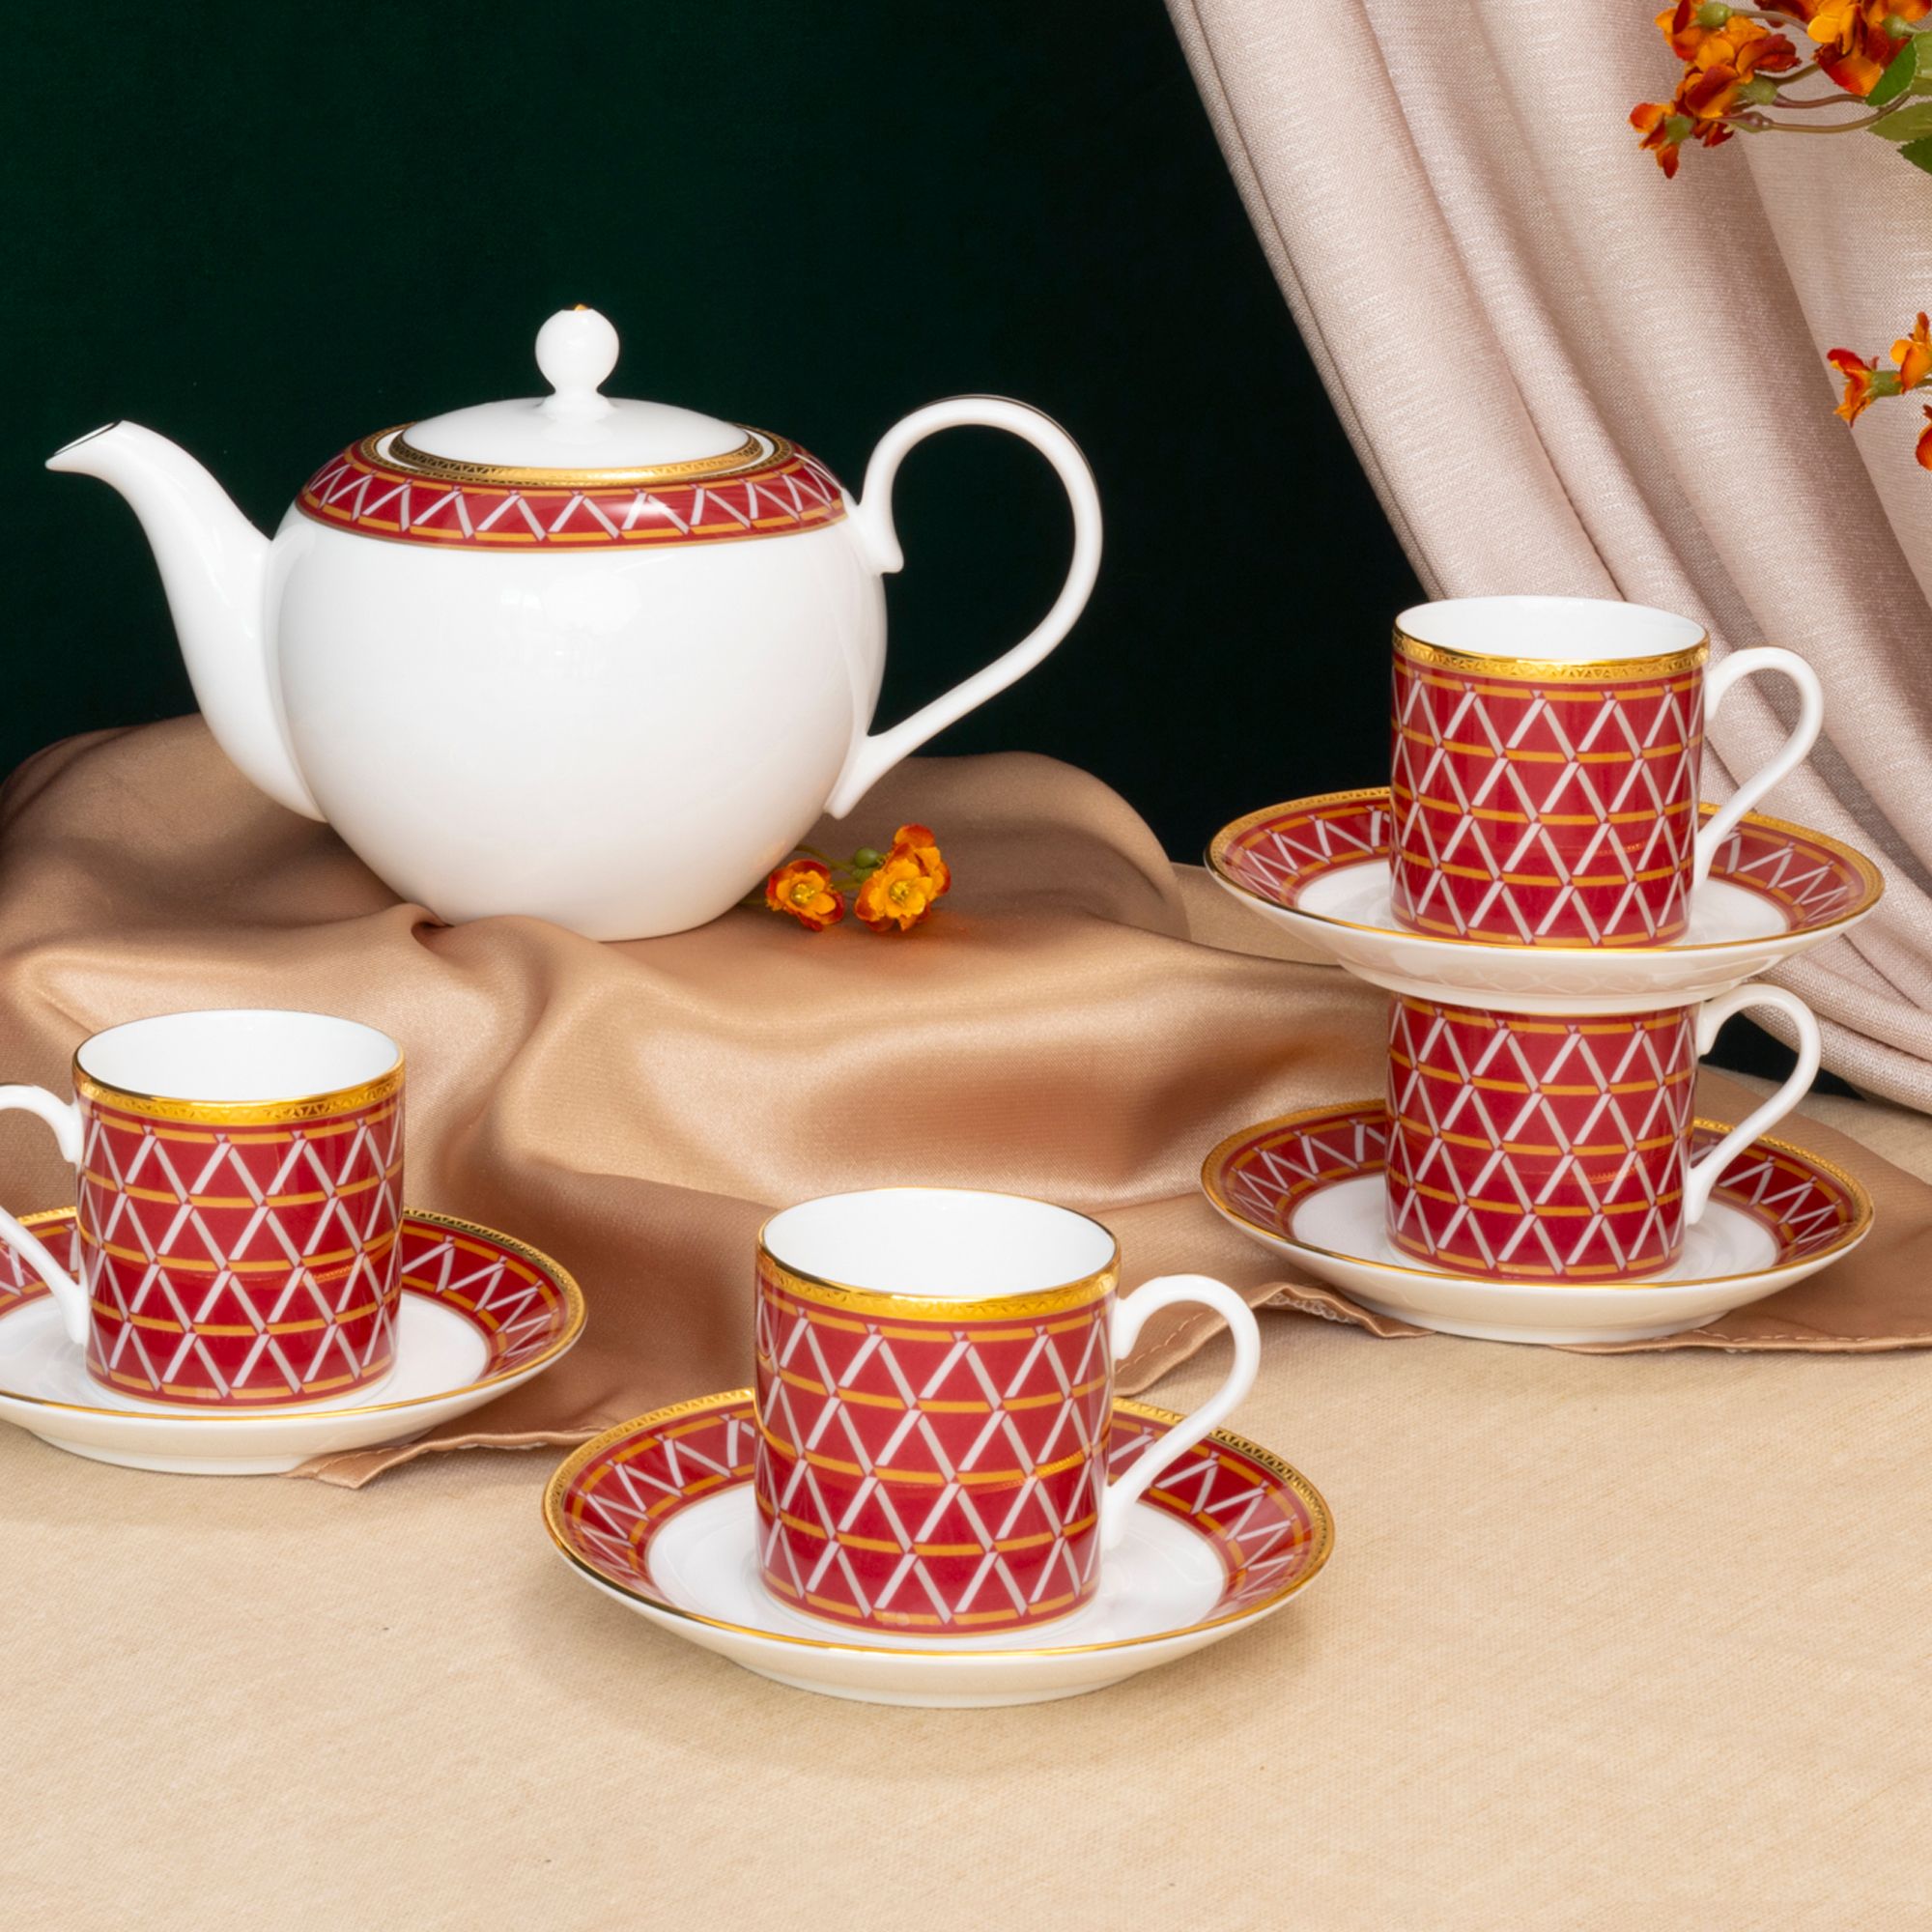  Bộ ấm chén uống trà 13 món (ấm nhỏ 650ml) sứ xương cao cấp | Crochet 4966L-T014S 